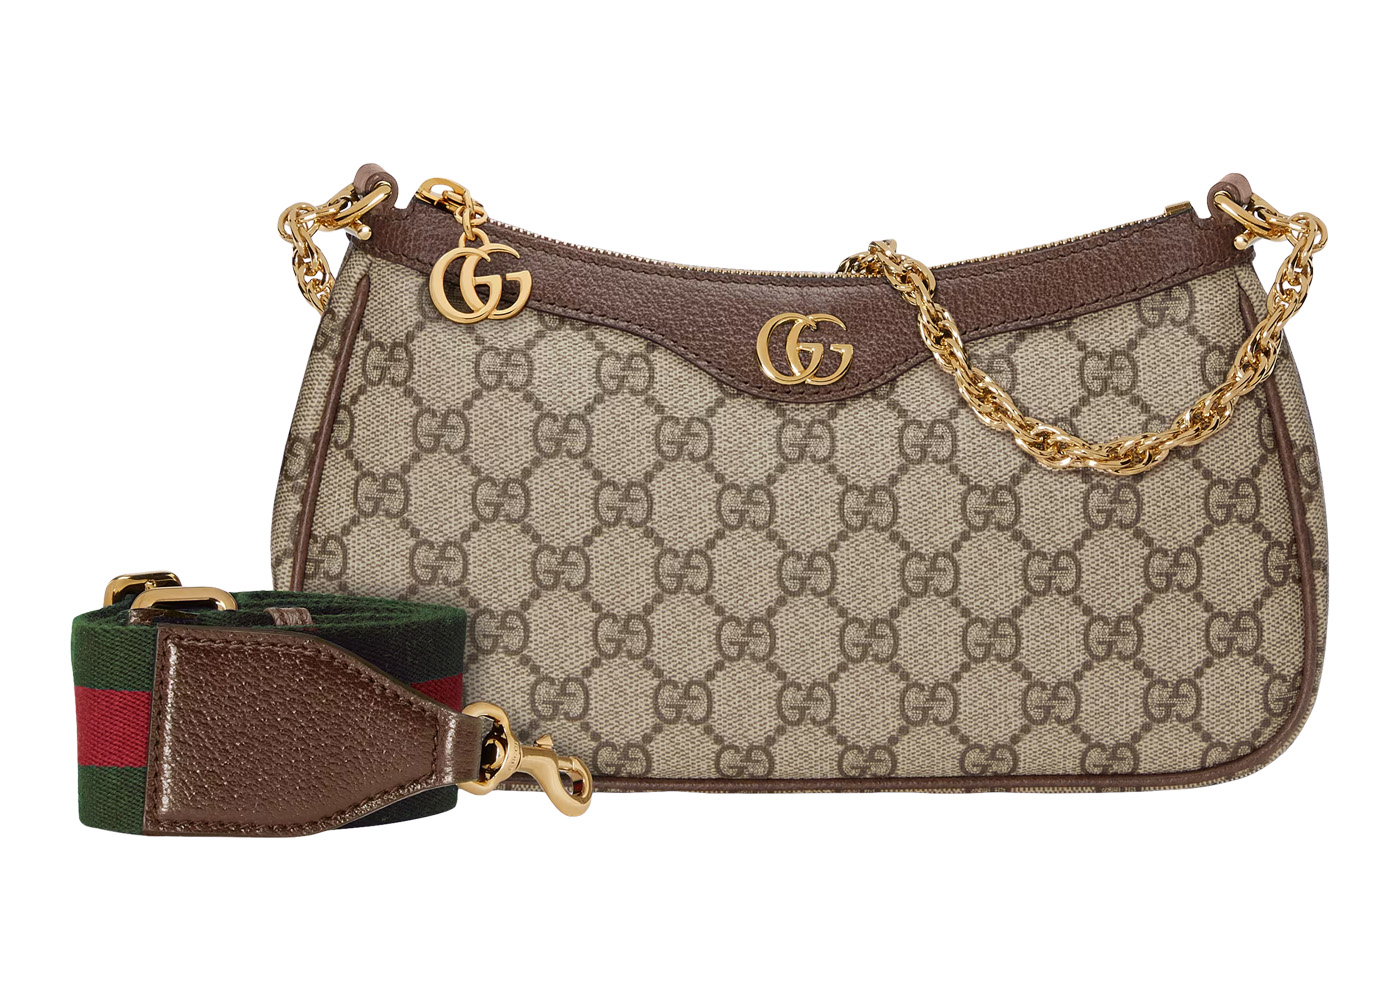 GenesinlifeShops Netherlands - Hand bag with logo Gucci - Gucci Soho Python  Shoulder Bag